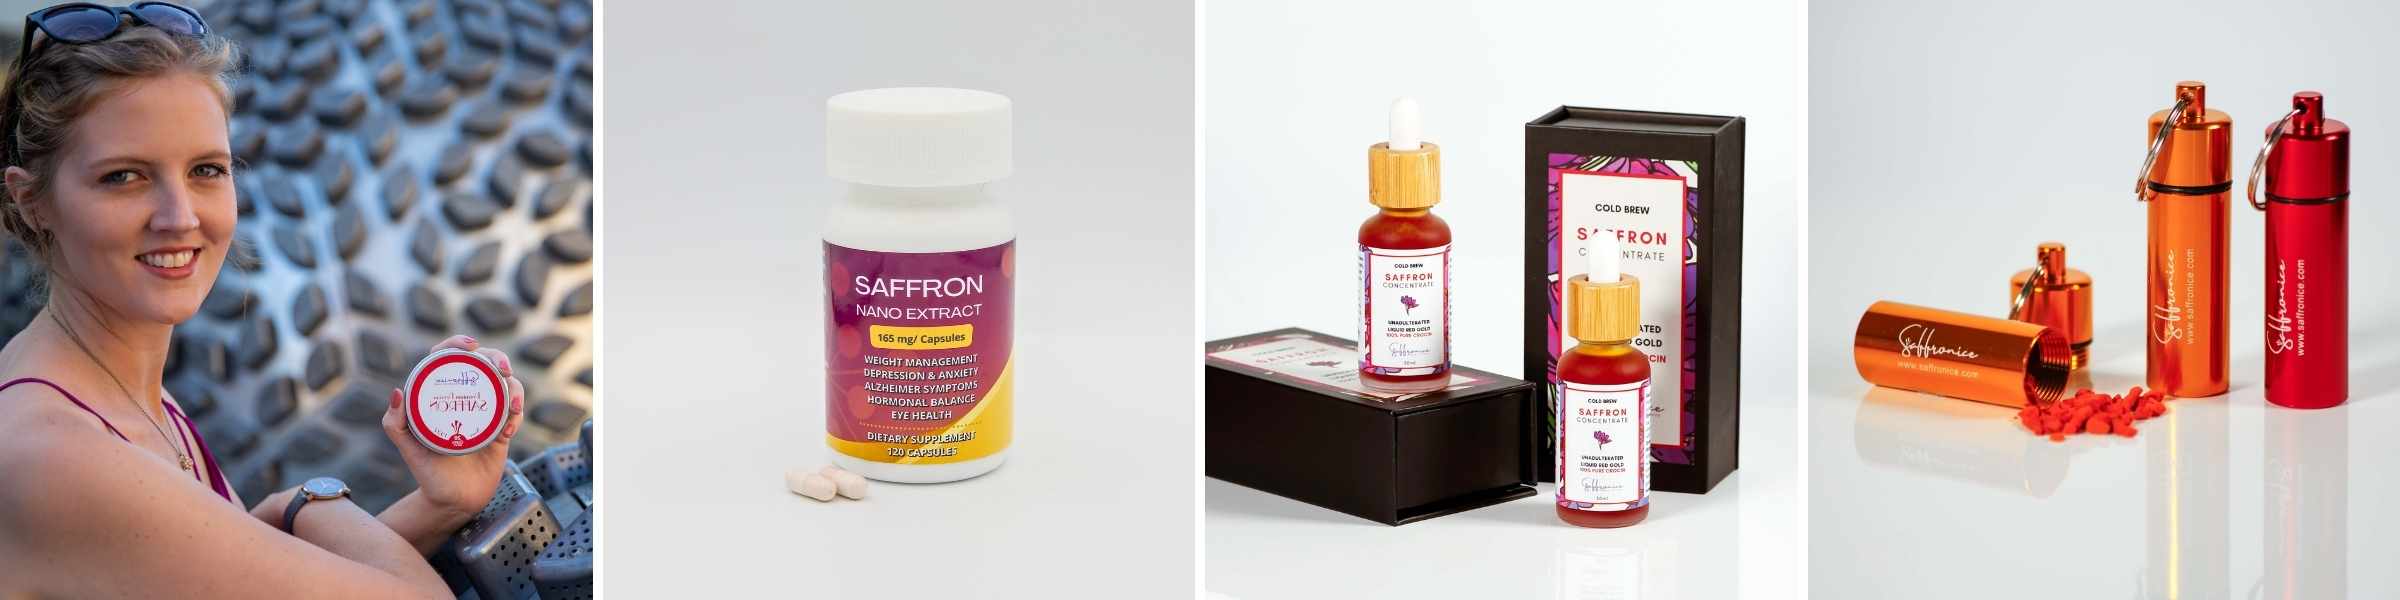 Saffron Products